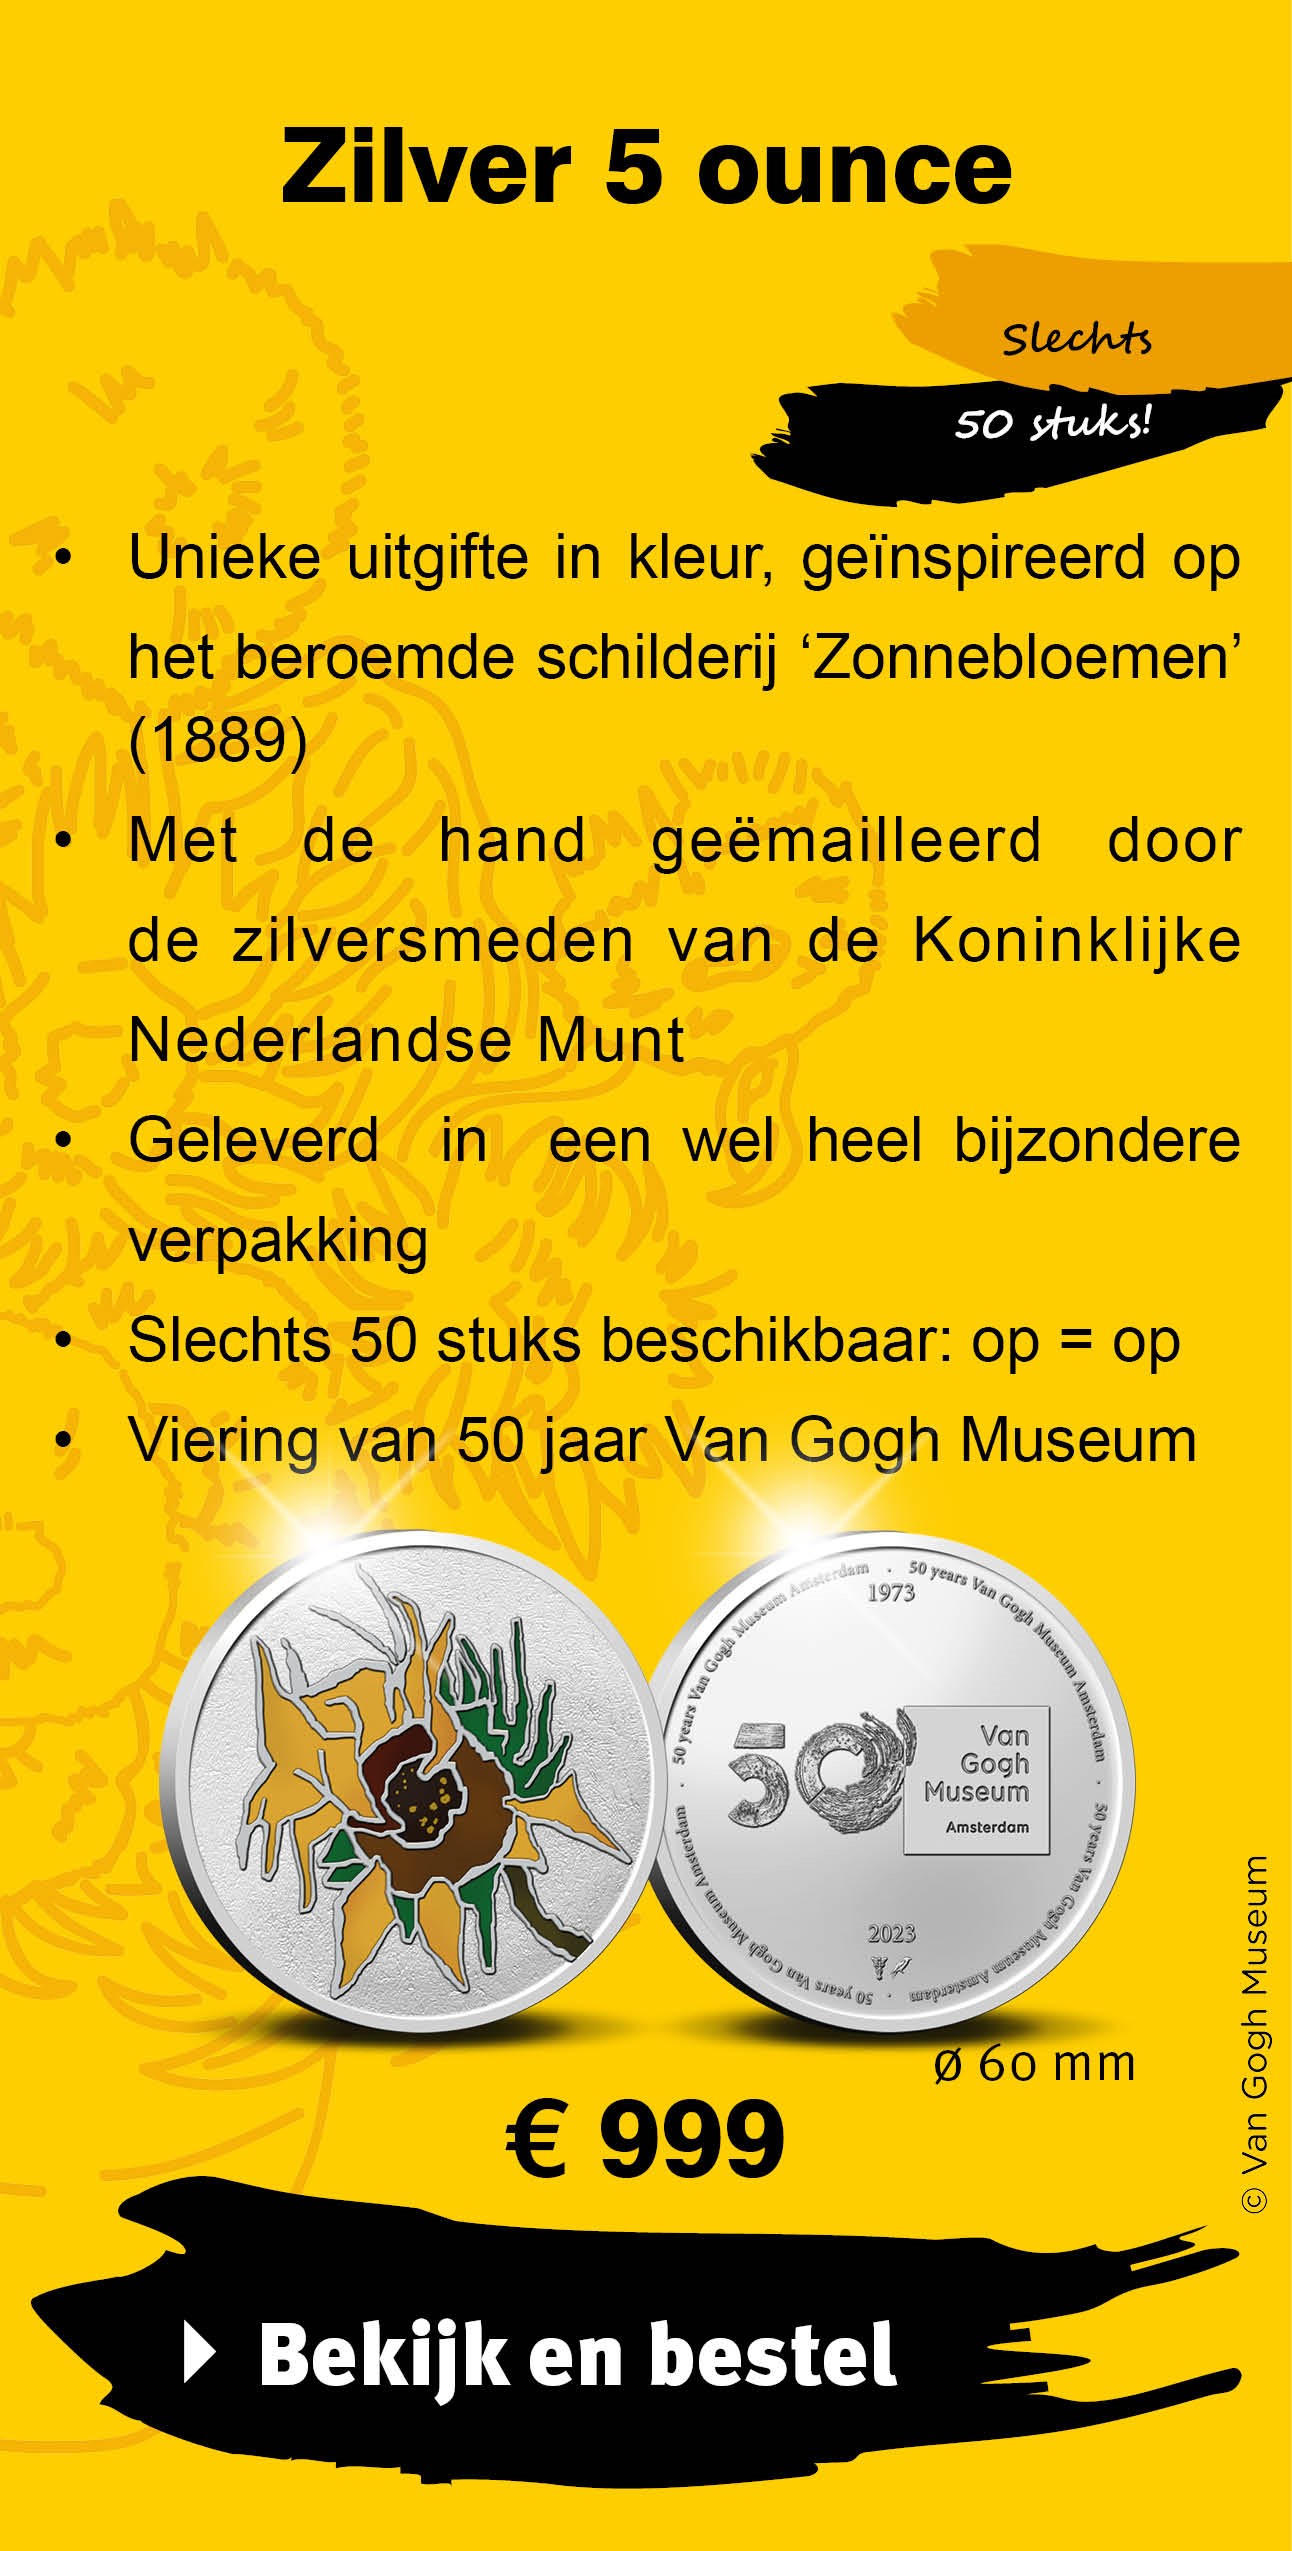 Bekijk en bestel: 50 jaar Van Gogh Museum Zilver 5 ounce